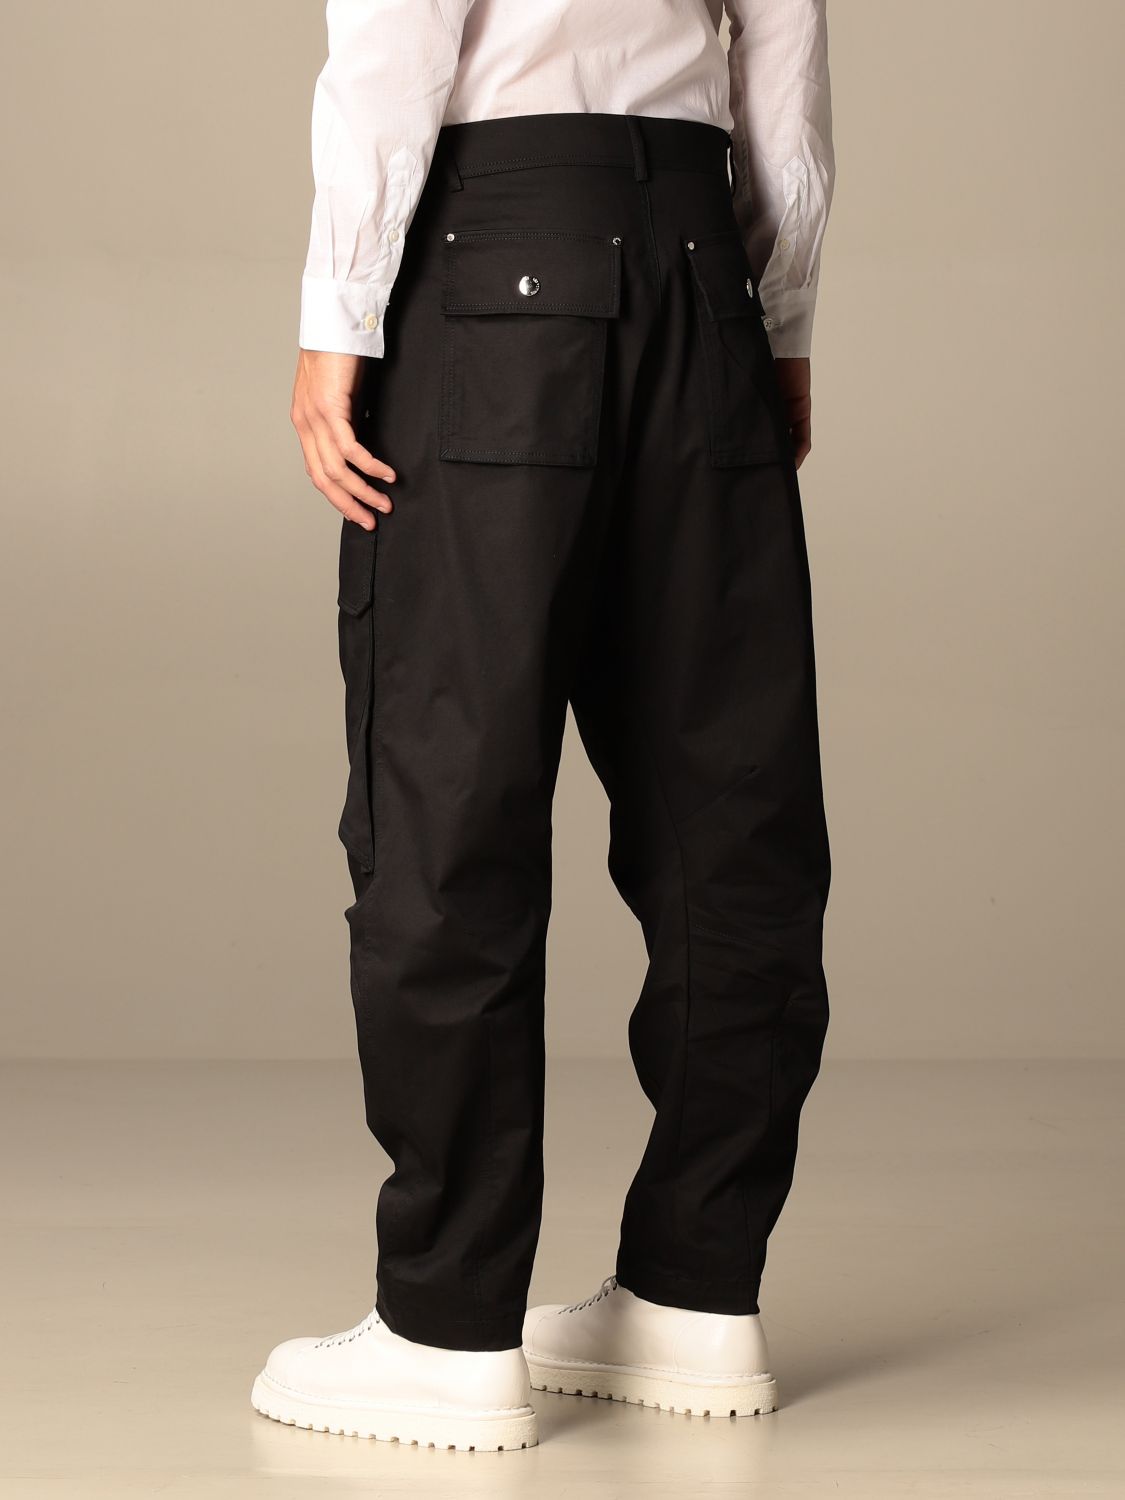 Pants Les Hommes: Les Hommes men's trousers black 3